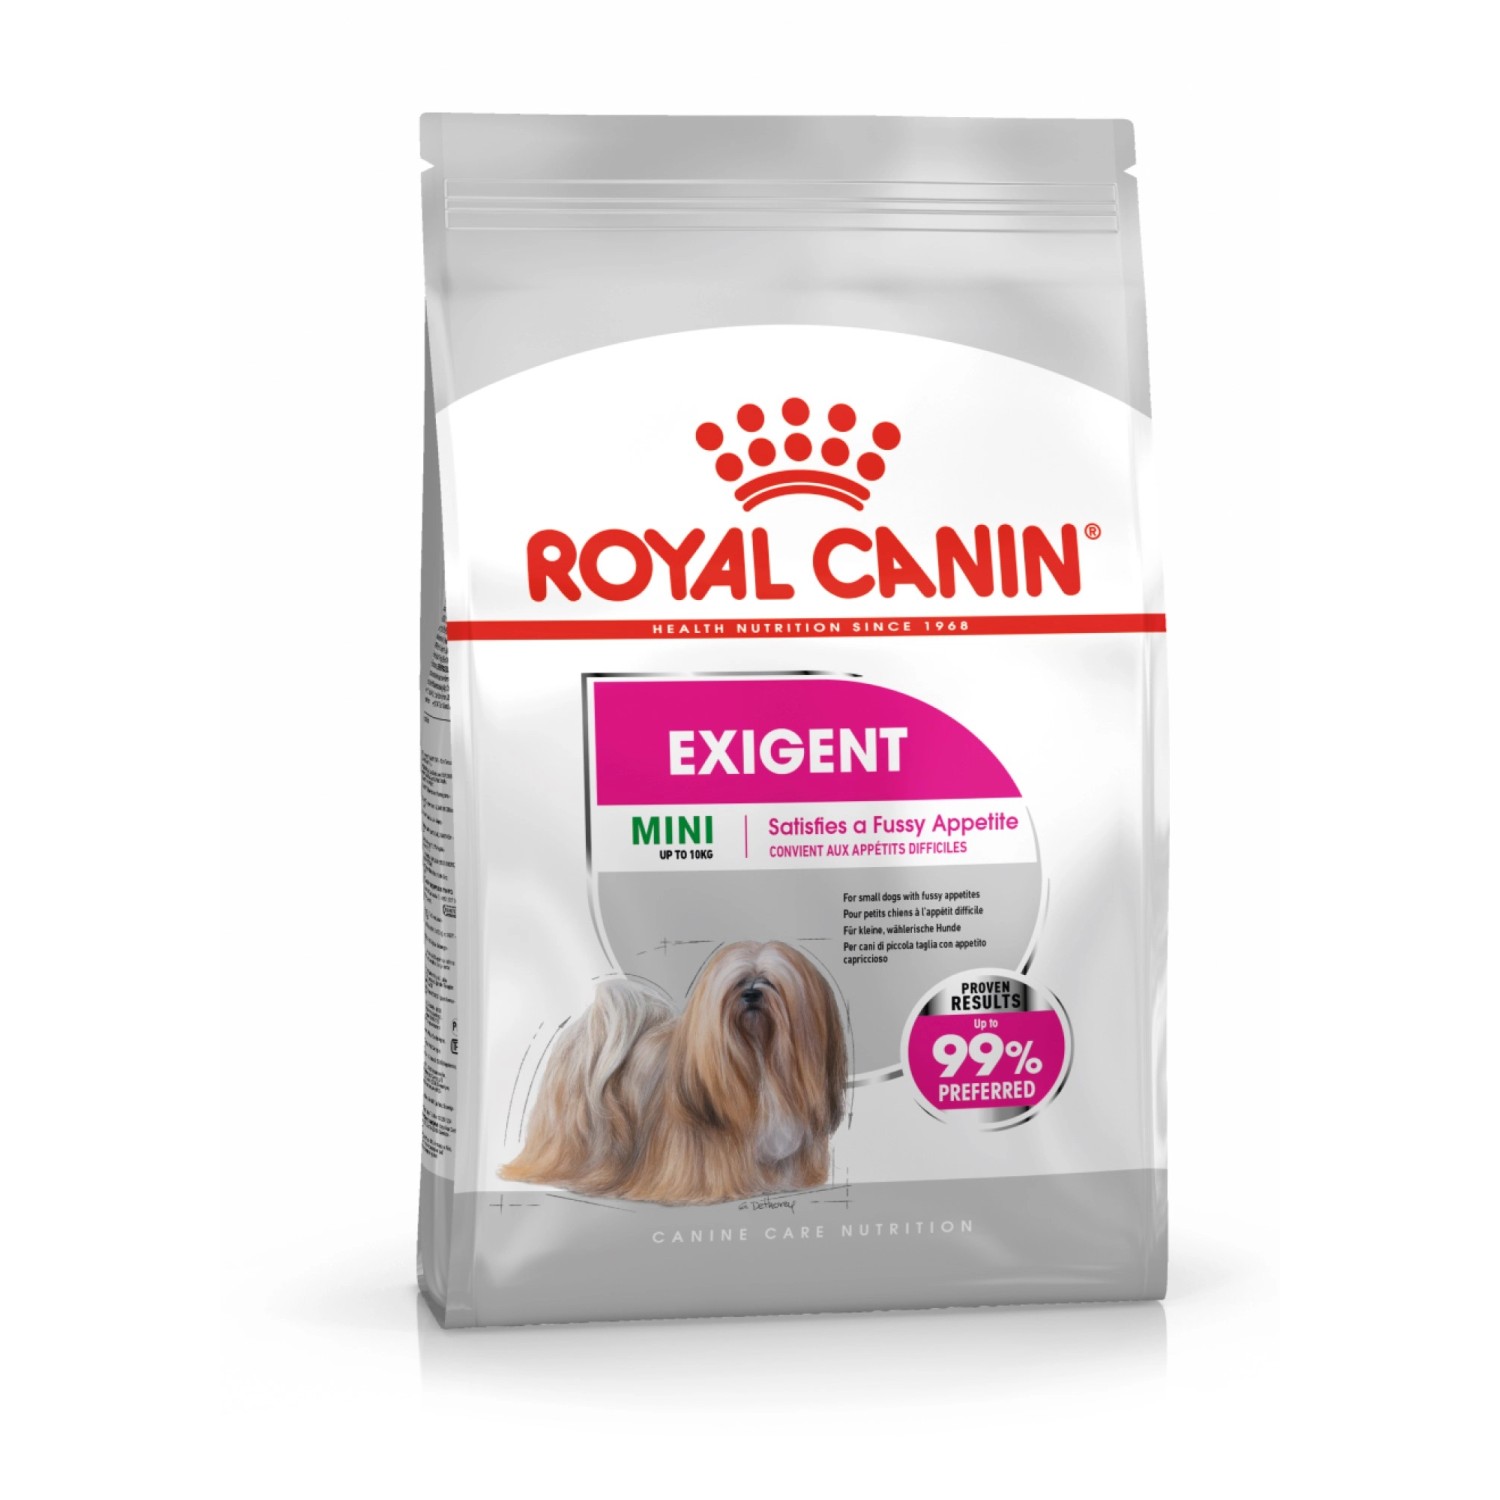 Royal Canin Trockenfutter Exigent Mini für wählerische kleine Hunde 1 kg